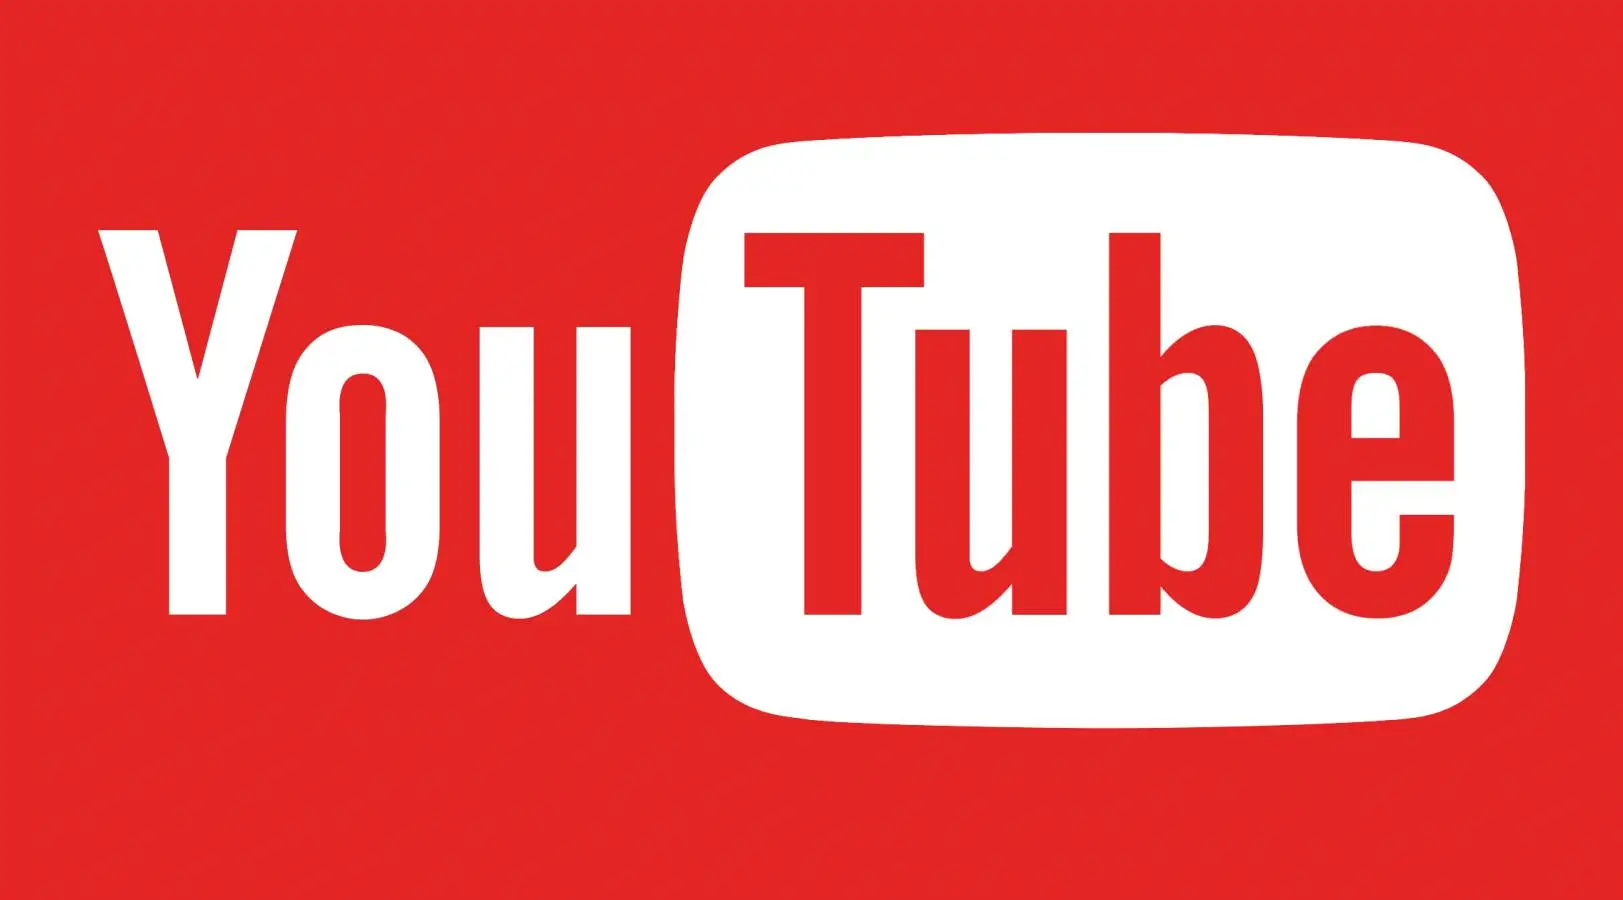 YouTube hat die Anwendungsänderungen für Mobiltelefone aktualisiert